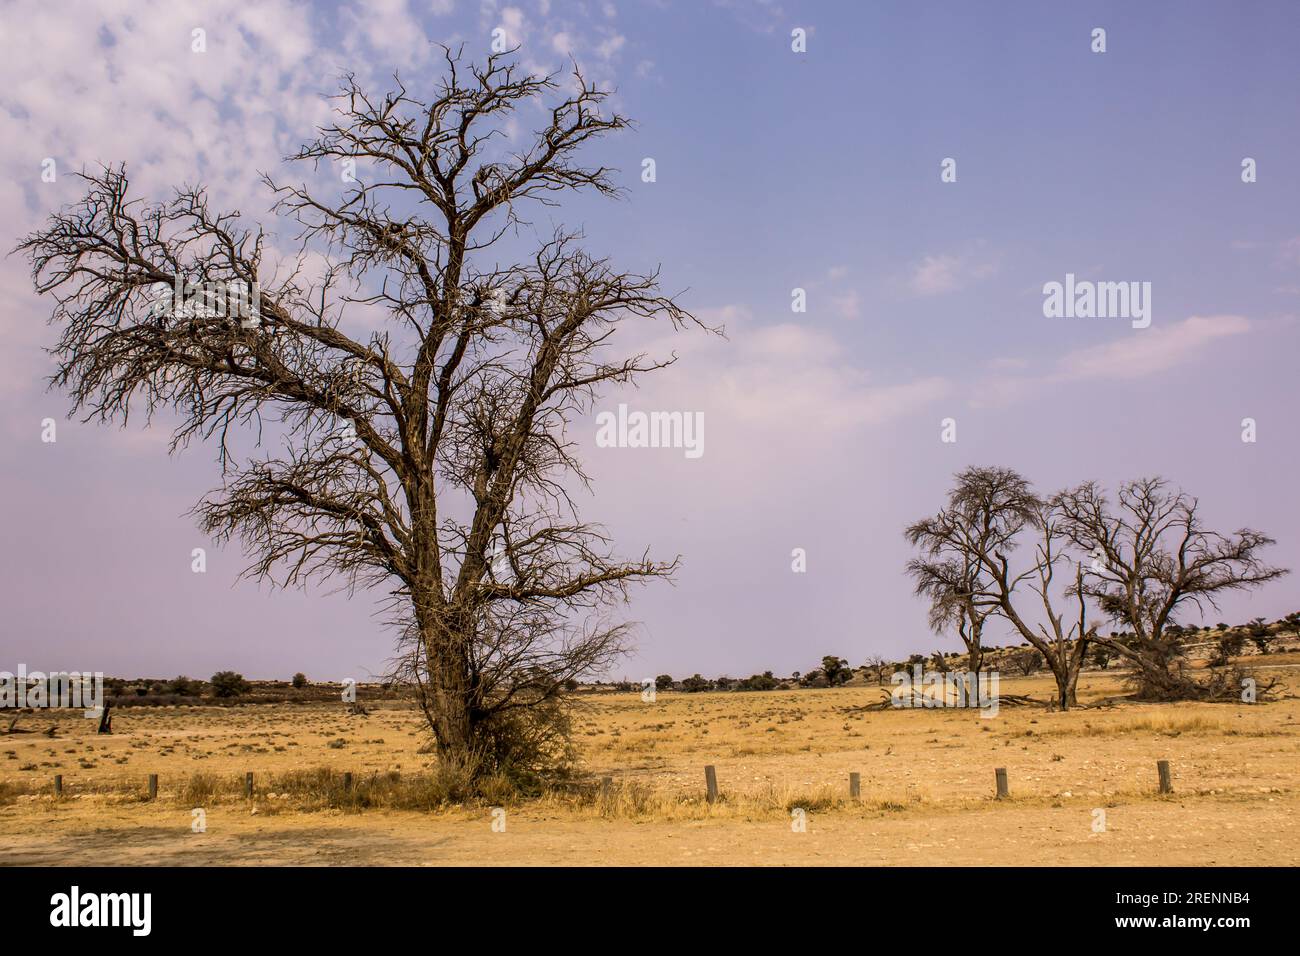 Le désert de sable aride Kalahari avec seulement quelques caméliques Banque D'Images